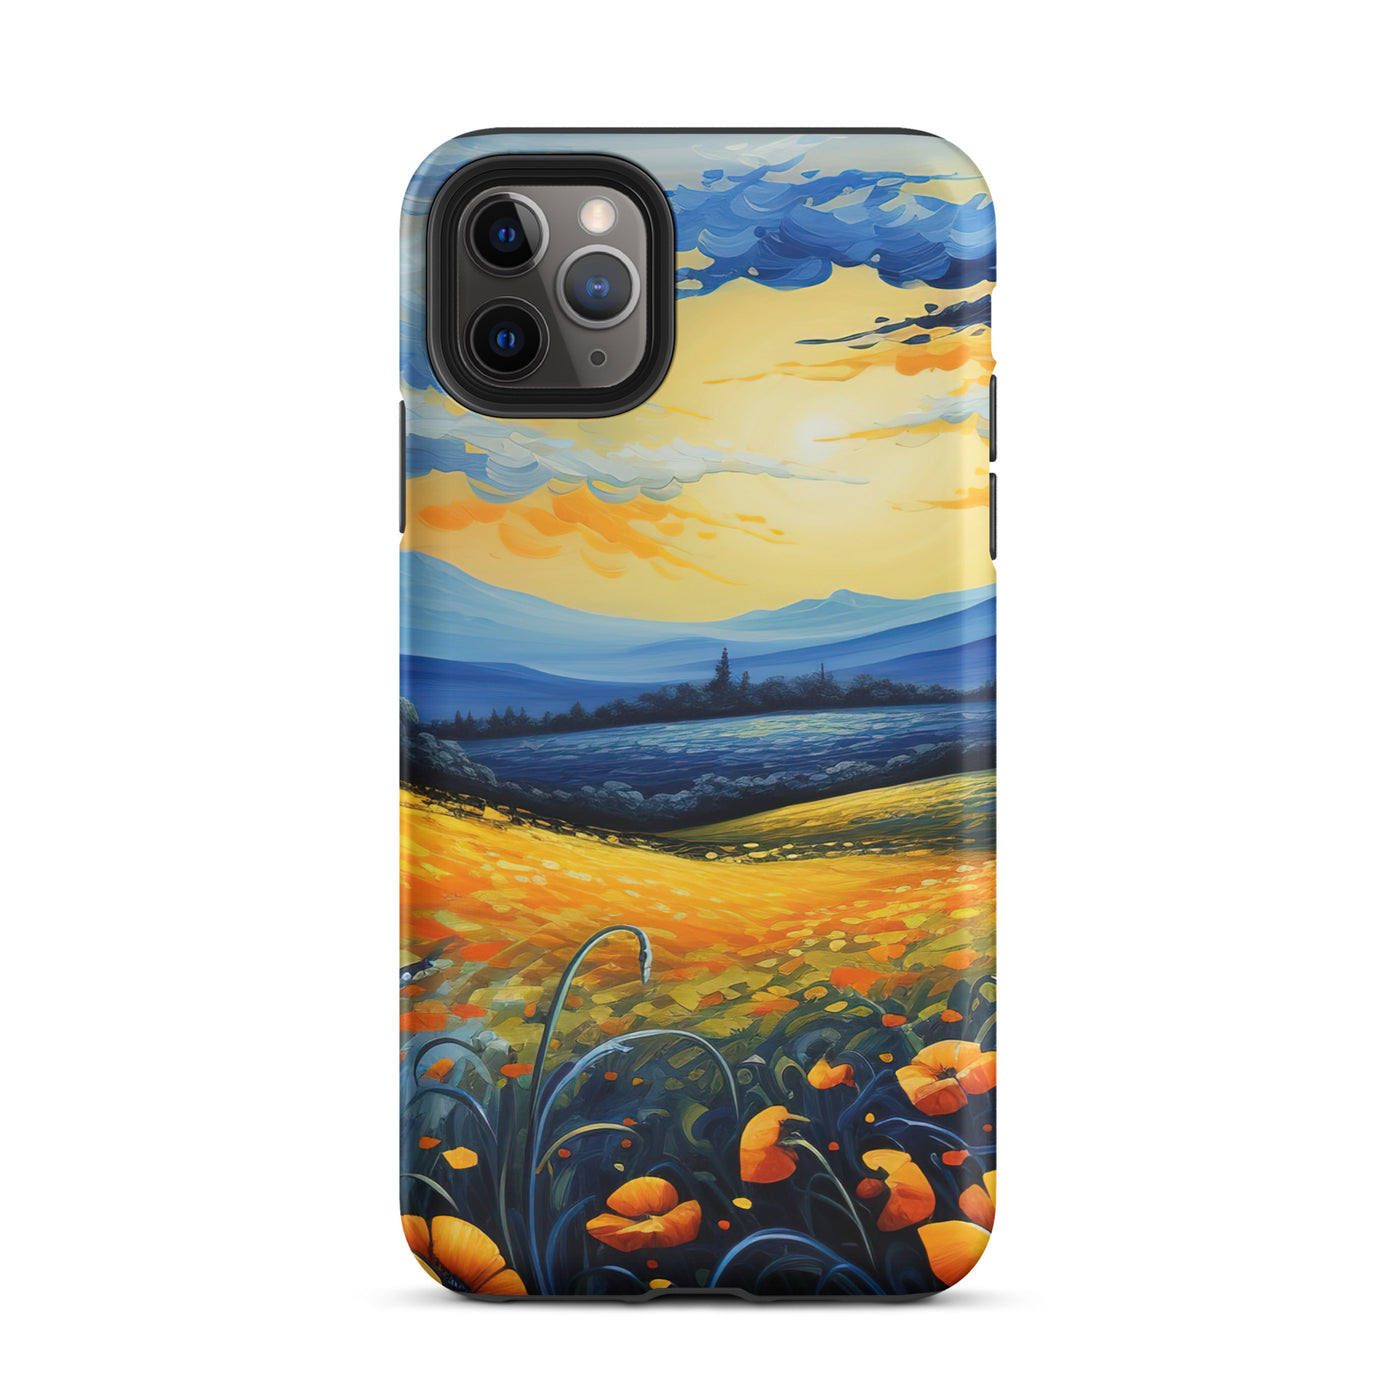 Berglandschaft mit schönen gelben Blumen - Landschaftsmalerei - iPhone Schutzhülle (robust) berge xxx iPhone 11 Pro Max